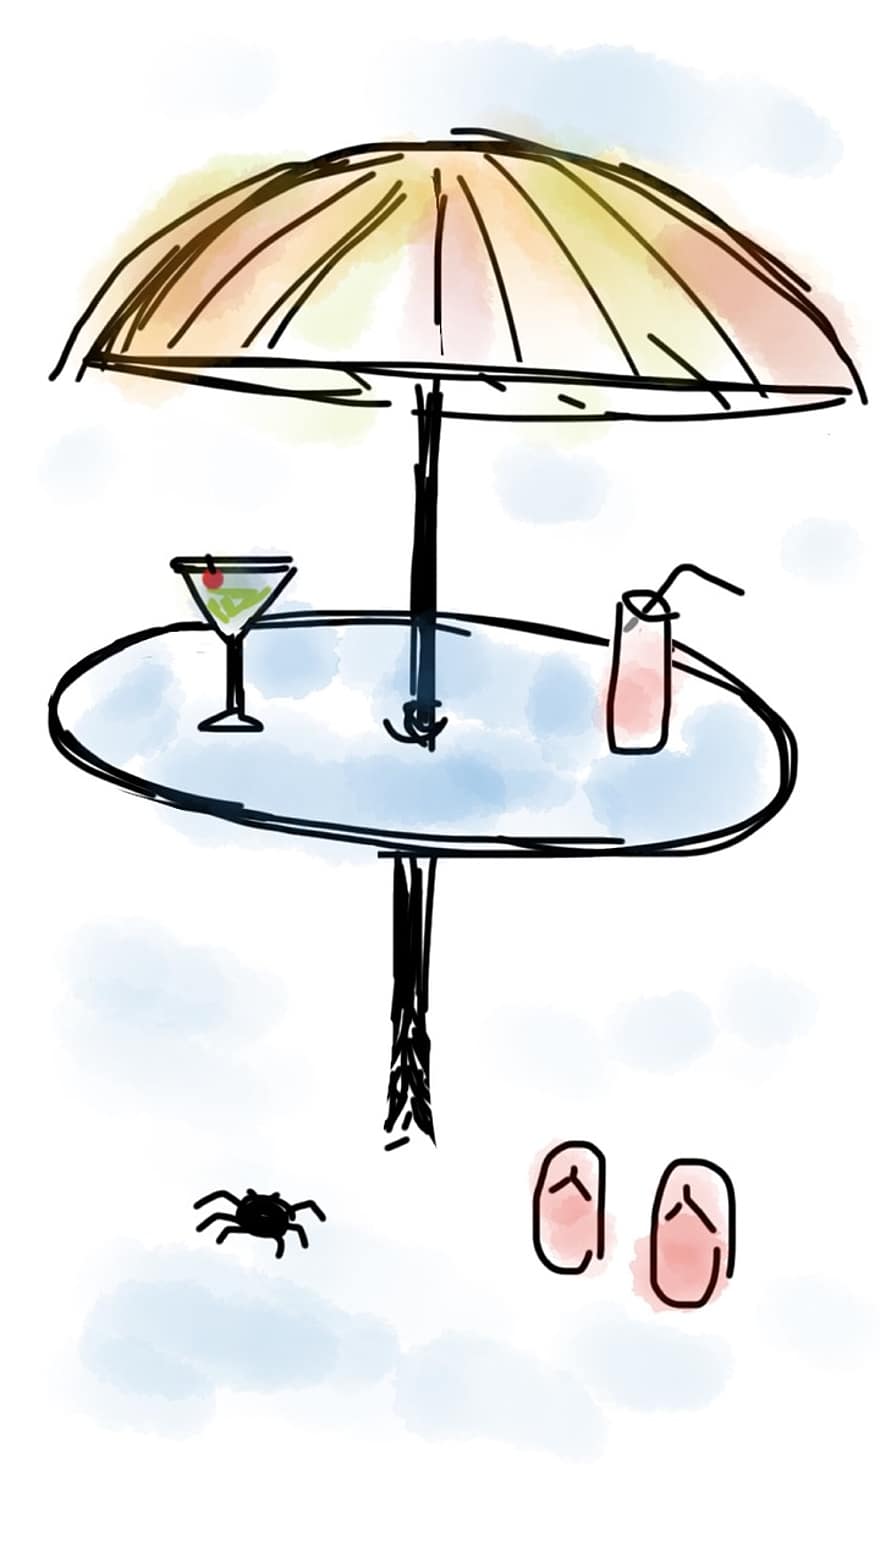 شاطئ بحر ، مظلة ، يشرب ، مارتيني ، مشروب غازي ، الطاولة ، مشمس ، مظلة الشاطئ ، رمال ، عطلة ، الصيف